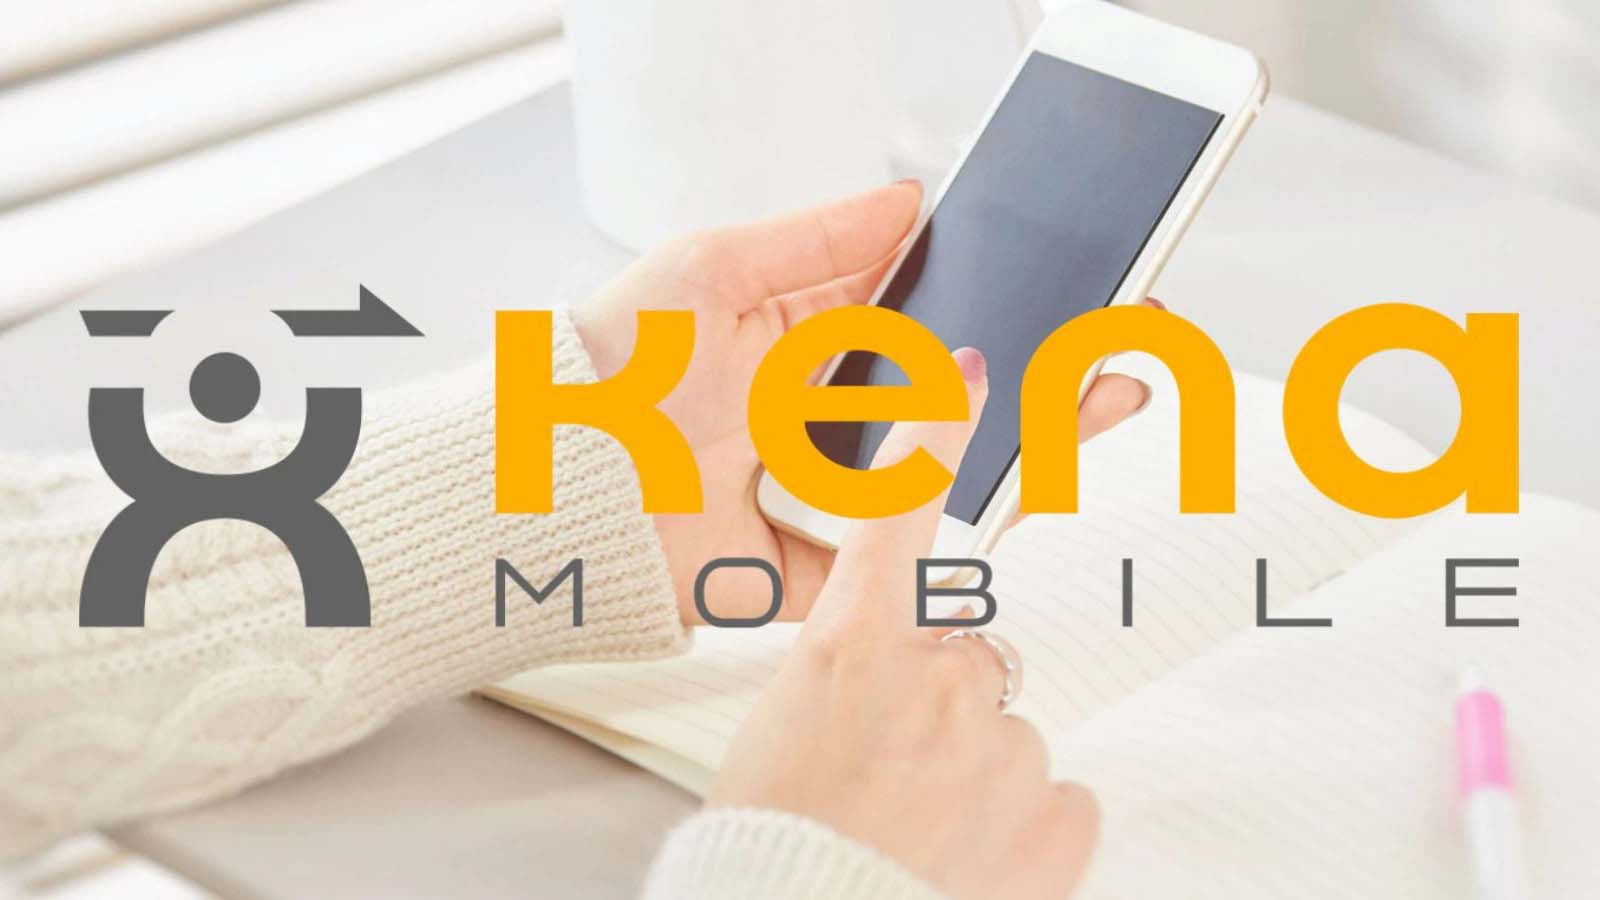 La strategia di Kena Mobile nel mercato telefonico